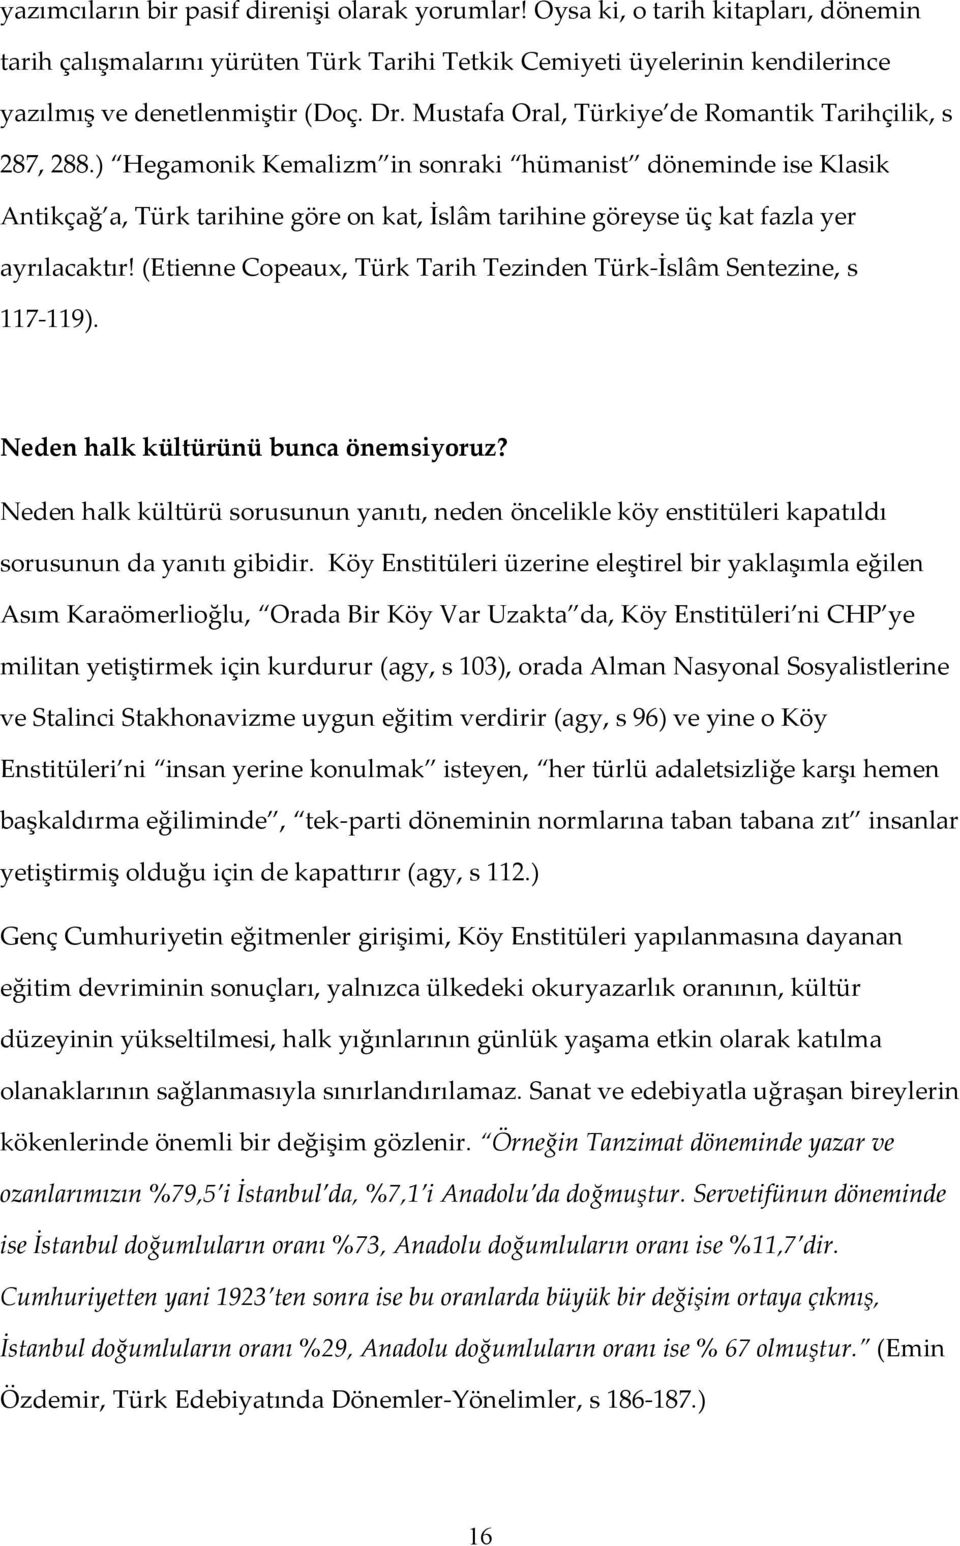 ) Hegamonik Kemalizm in sonraki hümanist döneminde ise Klasik Antikçağ a, Türk tarihine göre on kat, İslâm tarihine göreyse üç kat fazla yer ayrılacaktır!